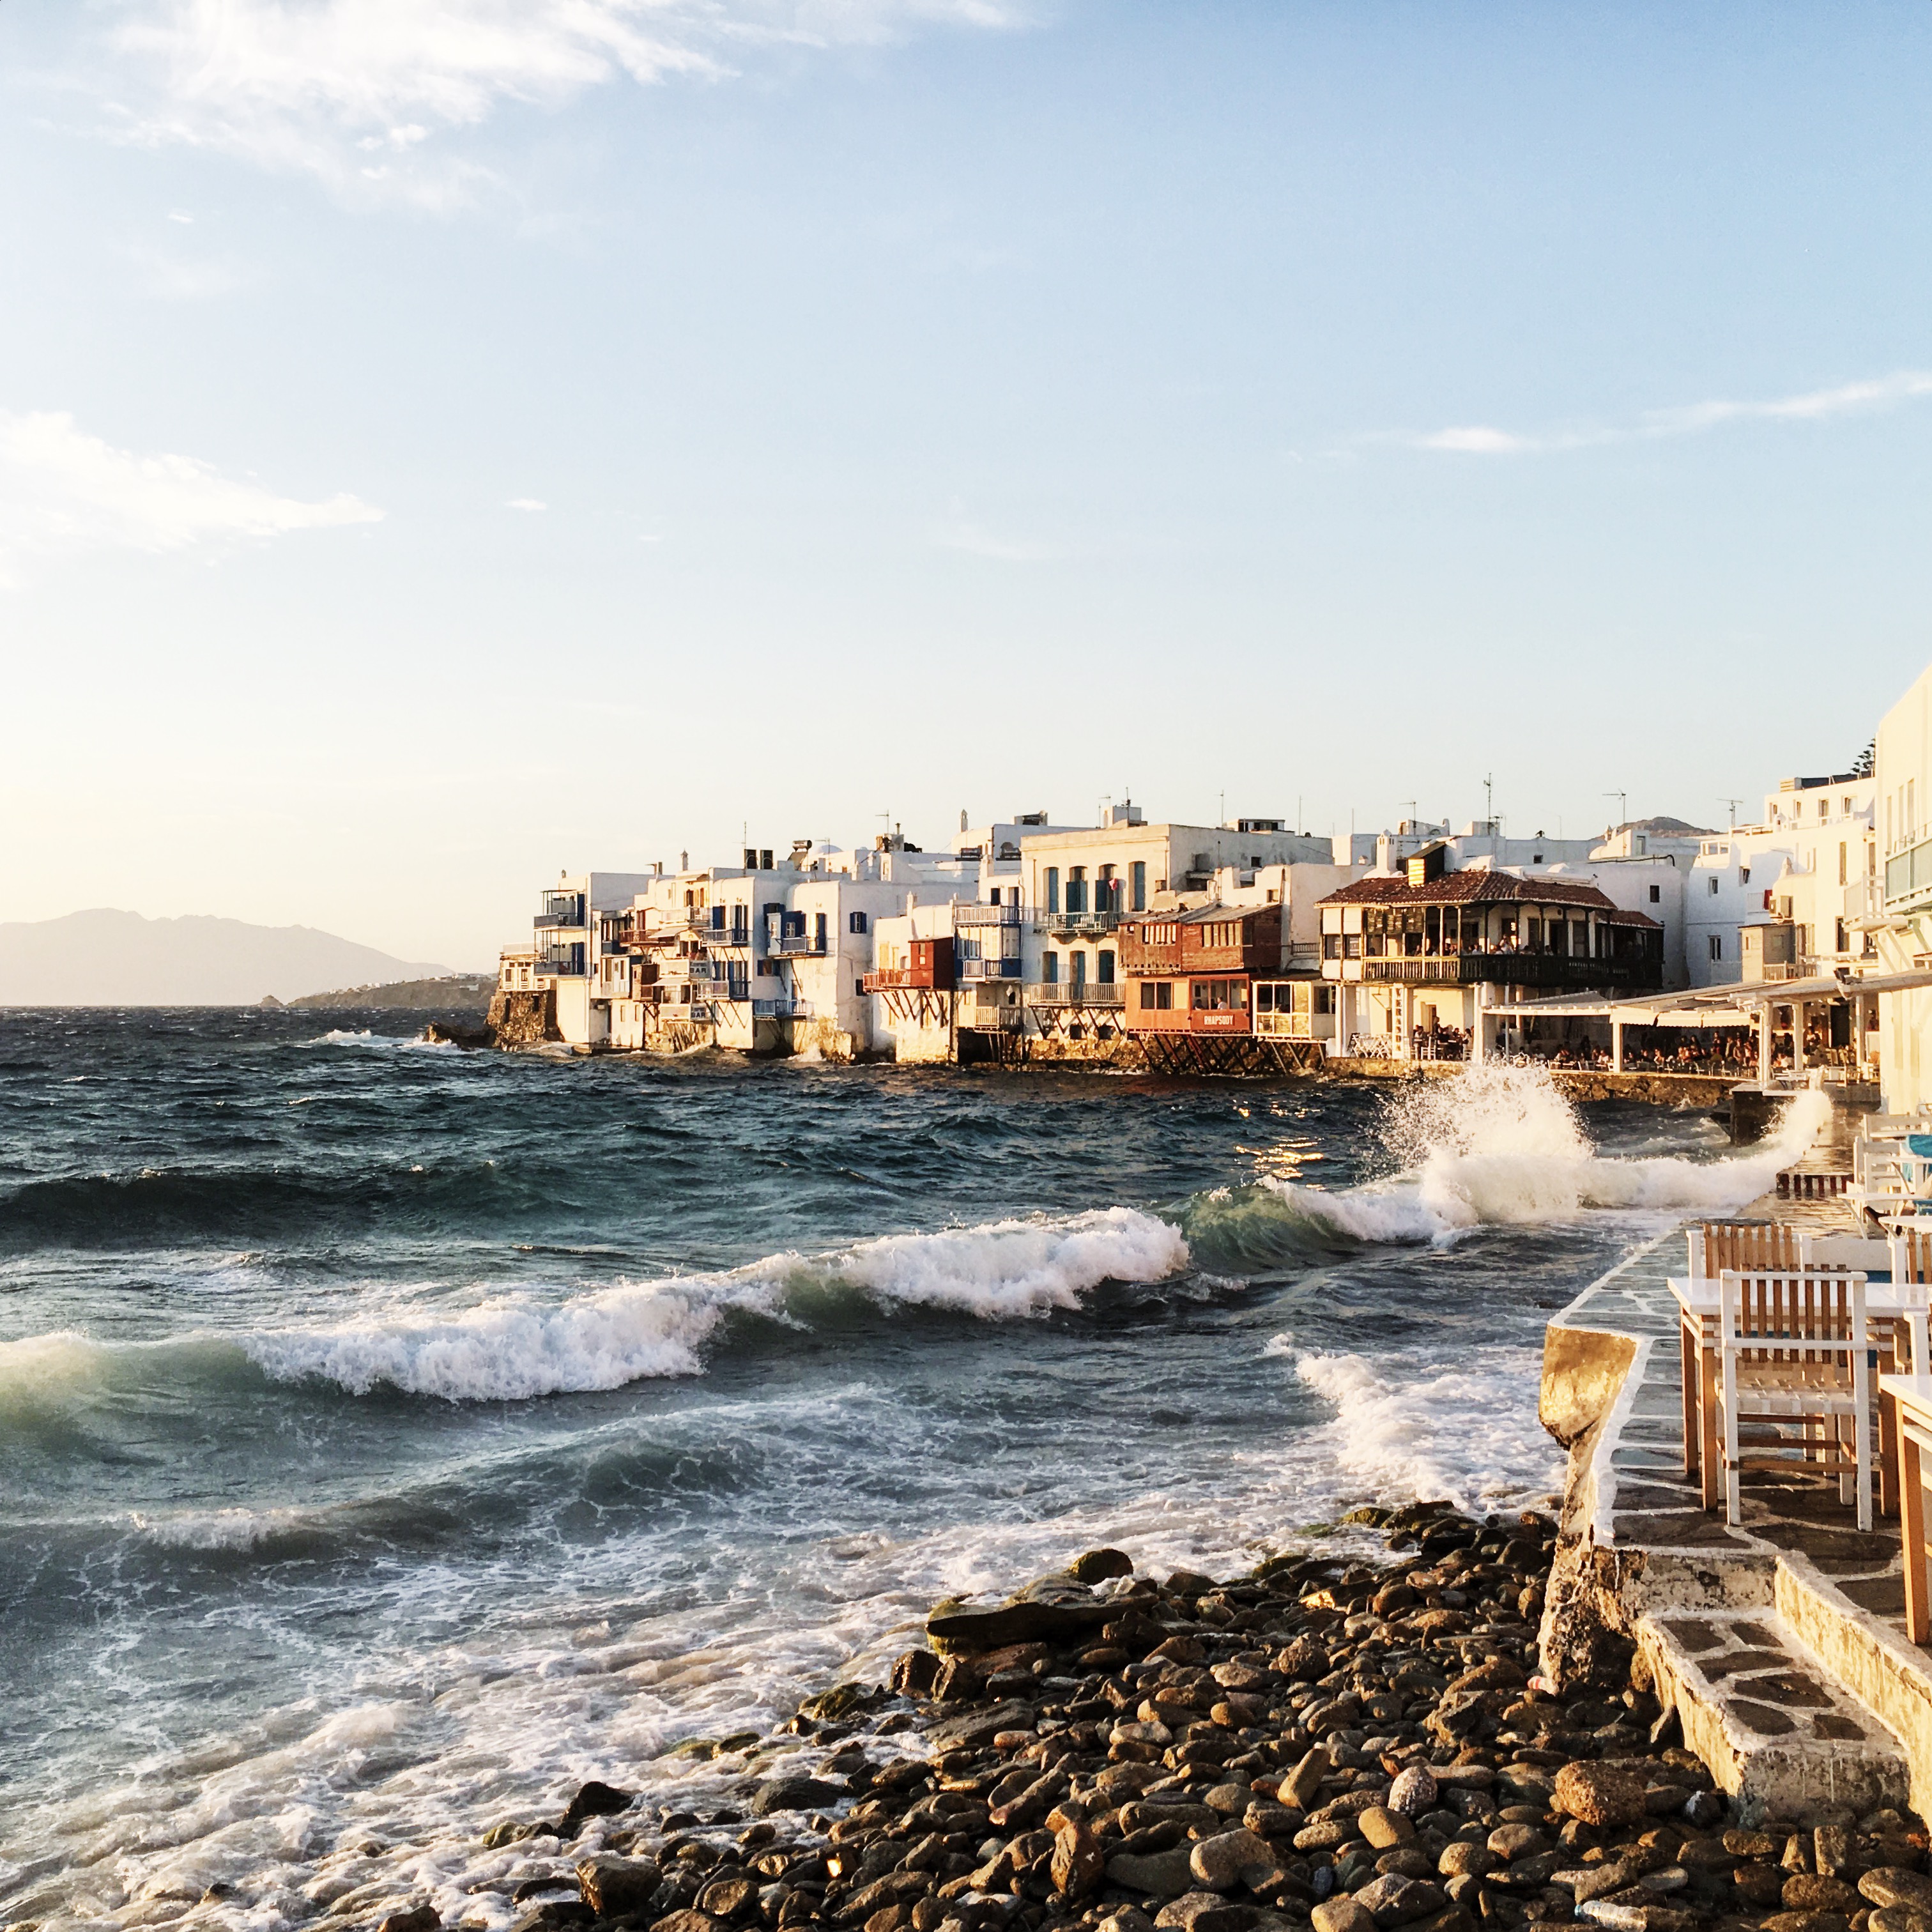 HANNAH SHELBY: Mykonos | Photo Diary + Travel Guide